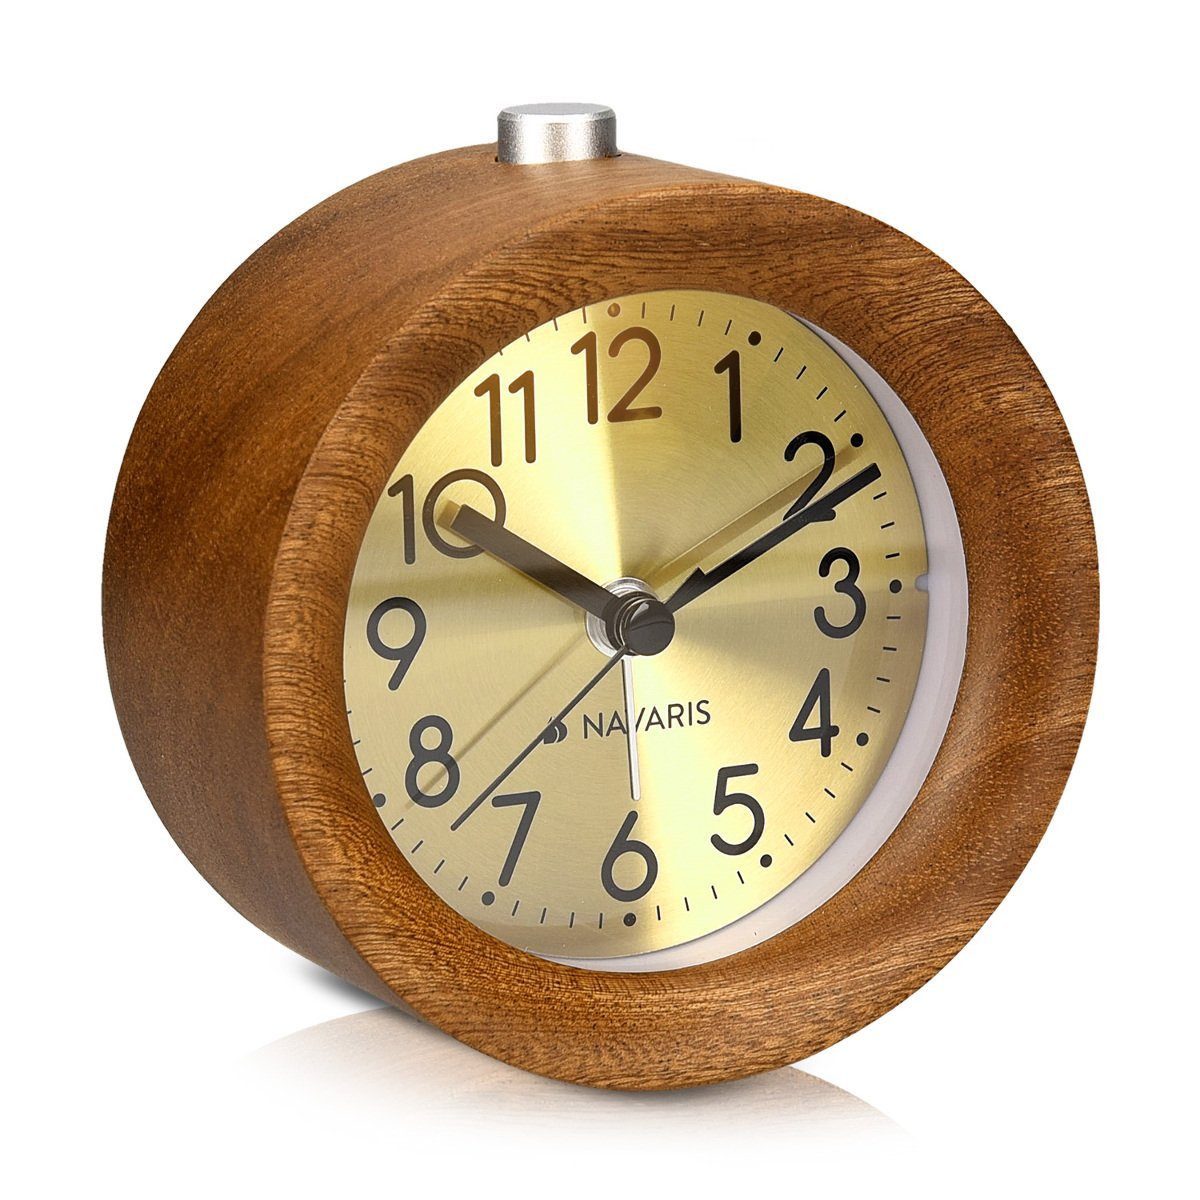 Navaris Wecker Analog Holz Wecker mit Snooze - Retro Uhr Rund mit  Ziffernblatt in Gold Alarm Licht - Leise Tischuhr ohne Ticken - Naturholz  online kaufen | OTTO